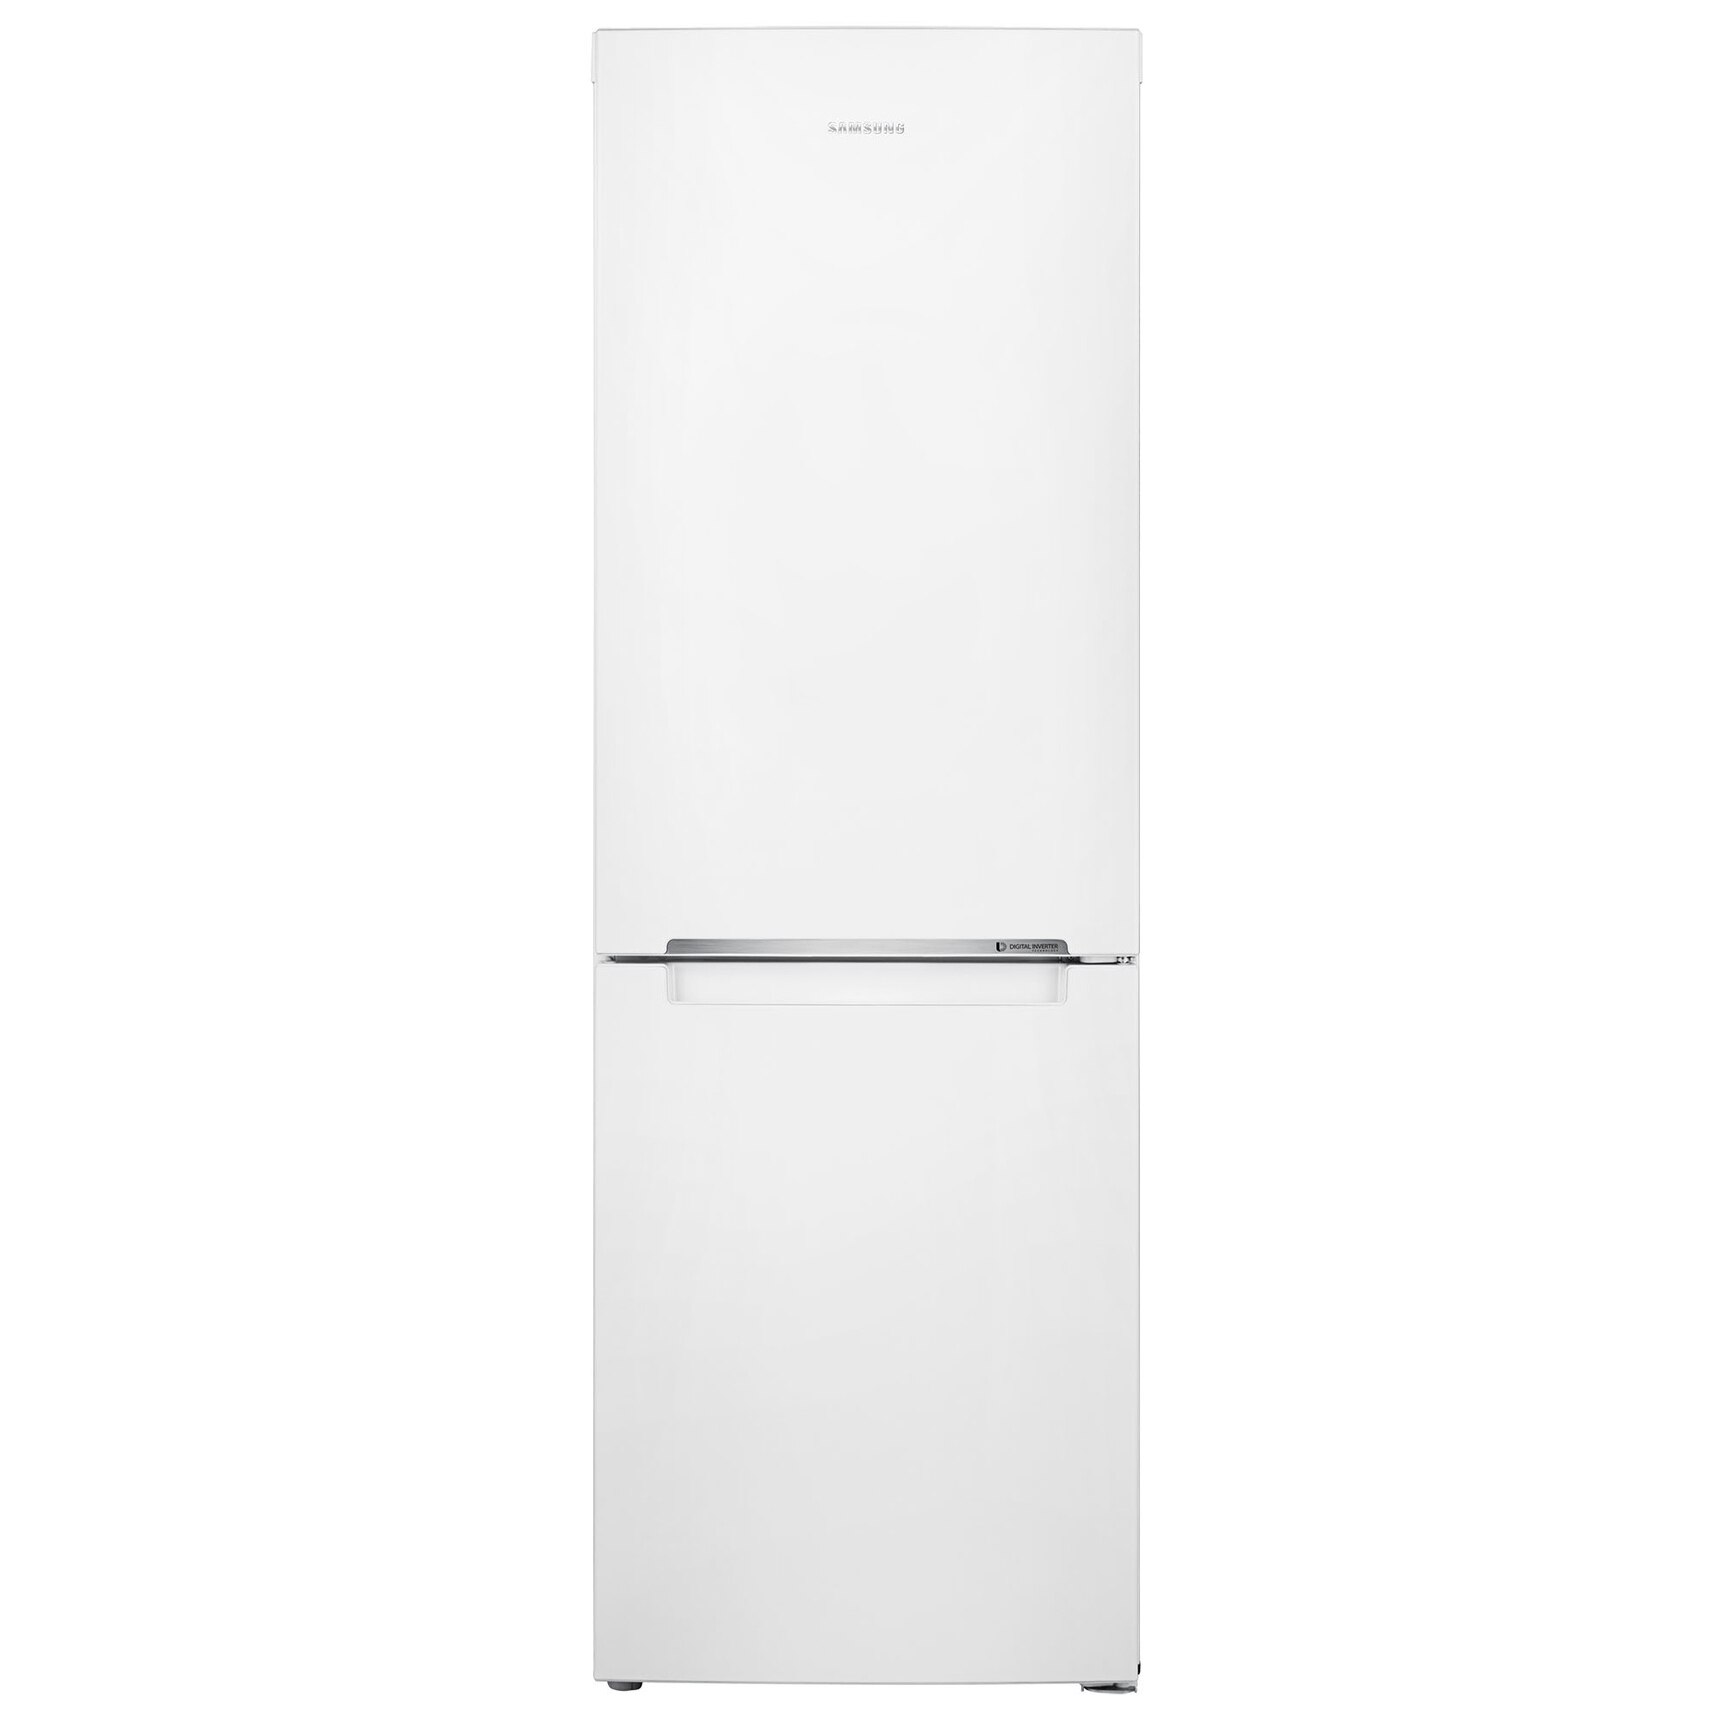 Хладилник Samsung RB29HSR2DWW/EF с обем от 289 л.